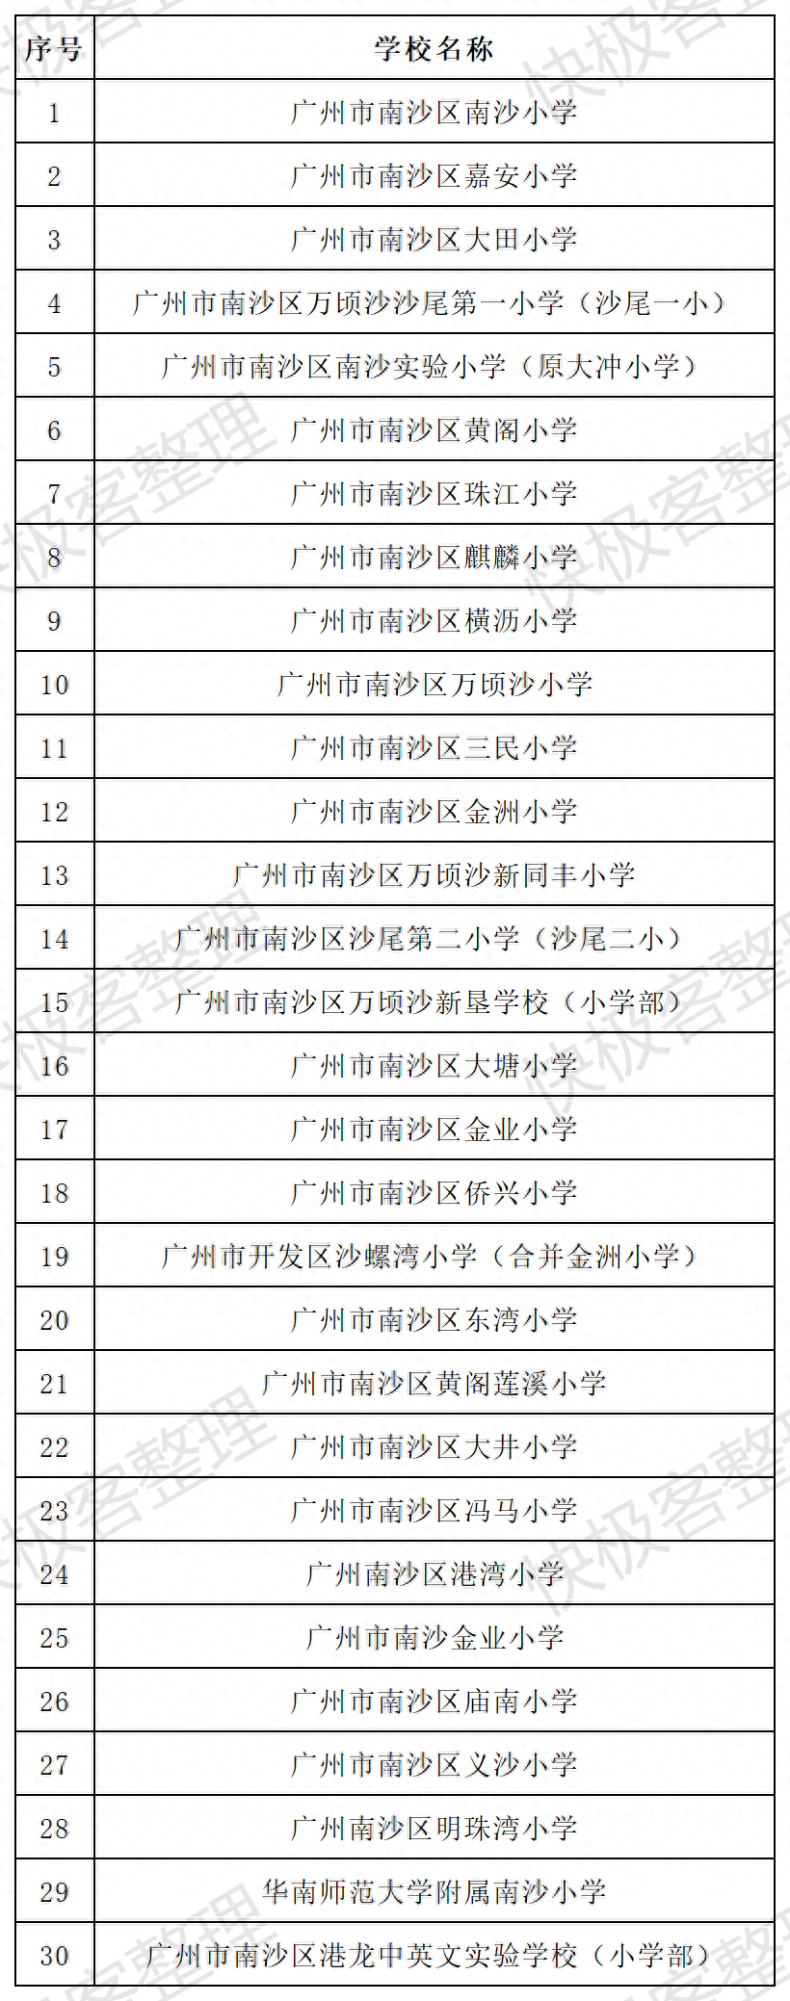 广州南沙区小学排名-1